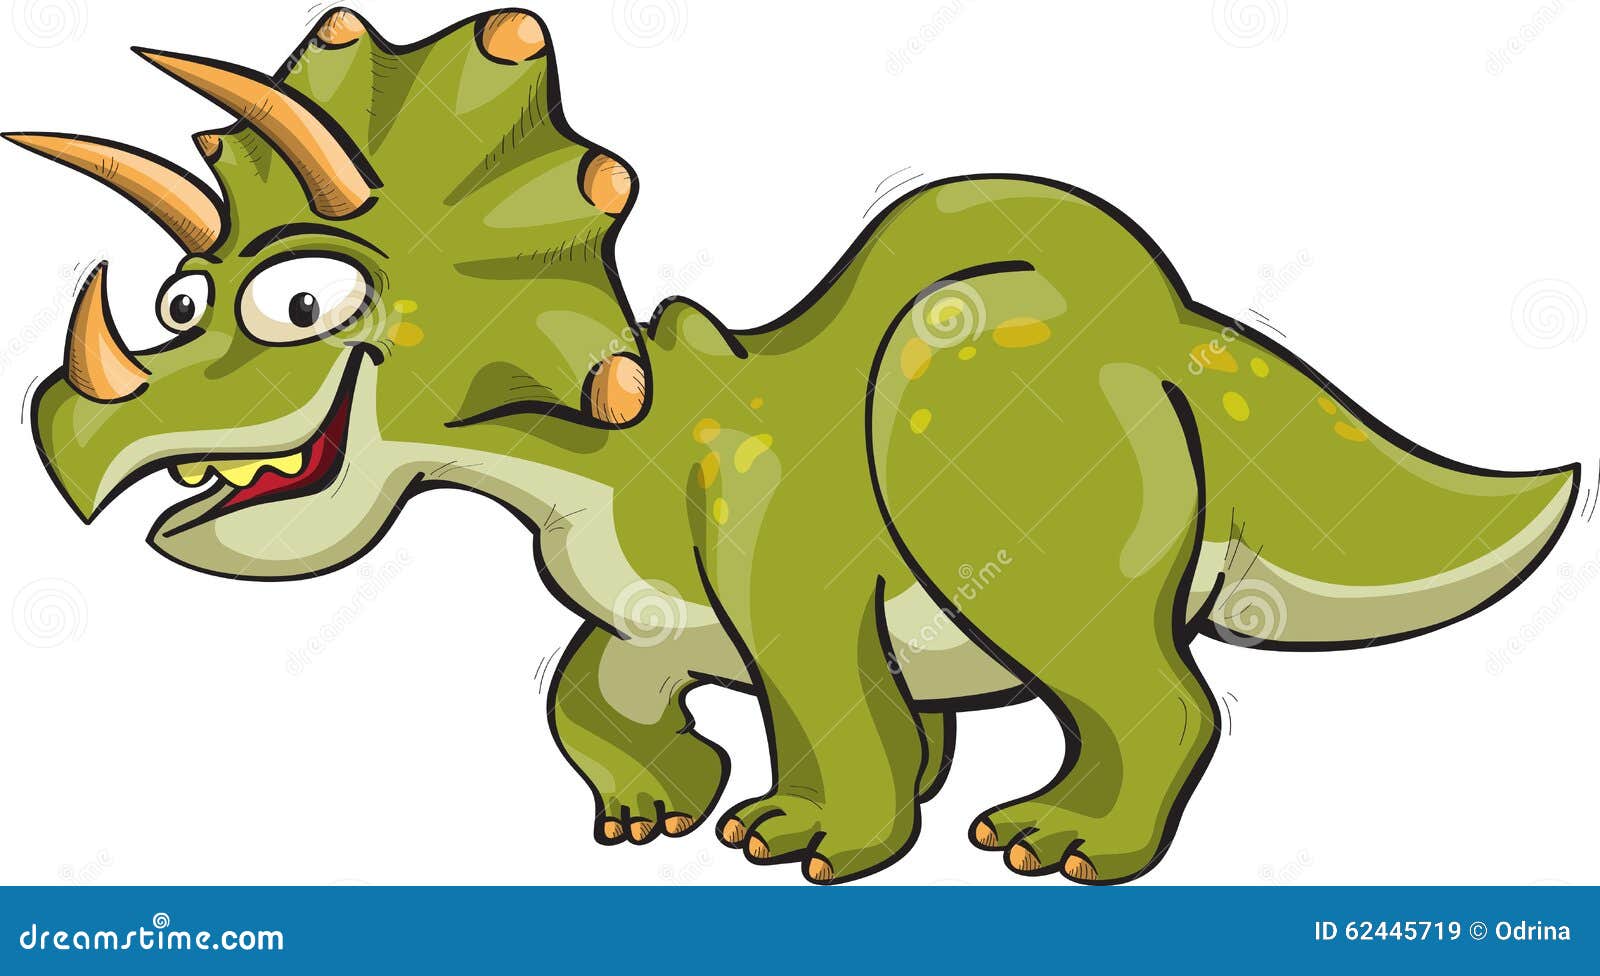 Динозавры Трицератопс хентай